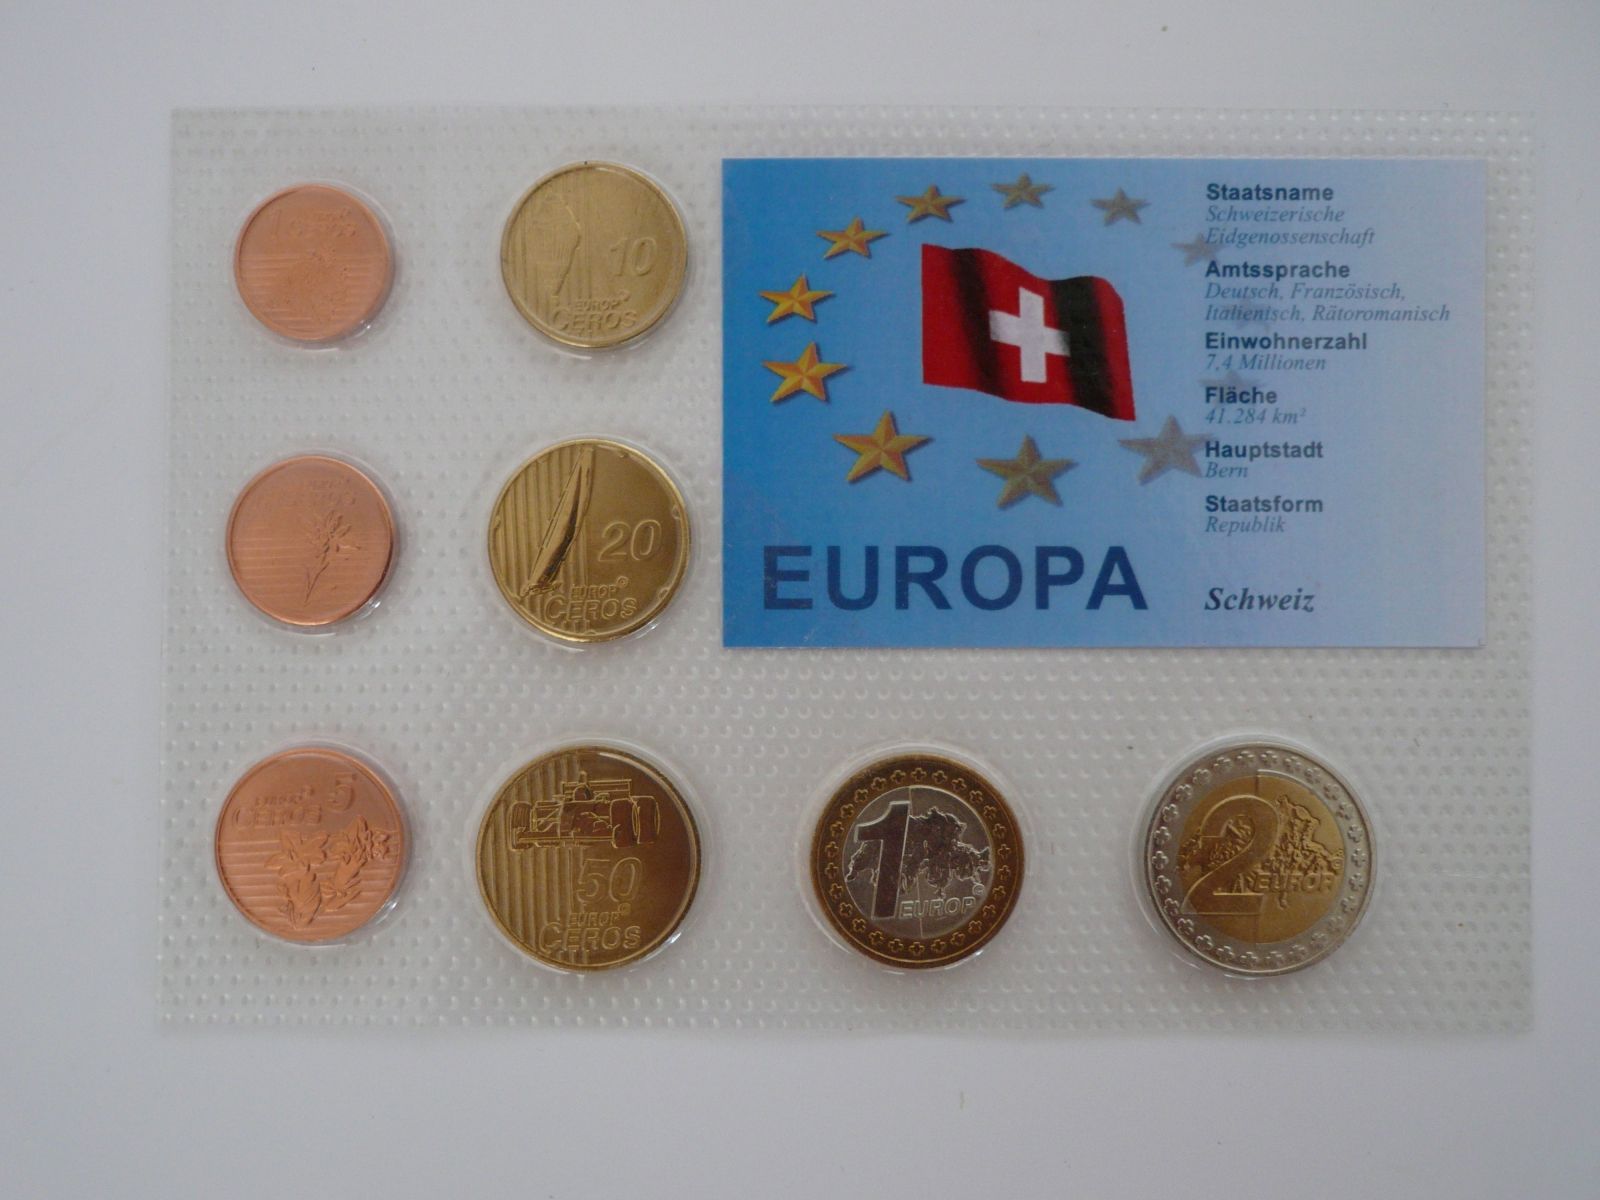 sada mincí Švýcarsko